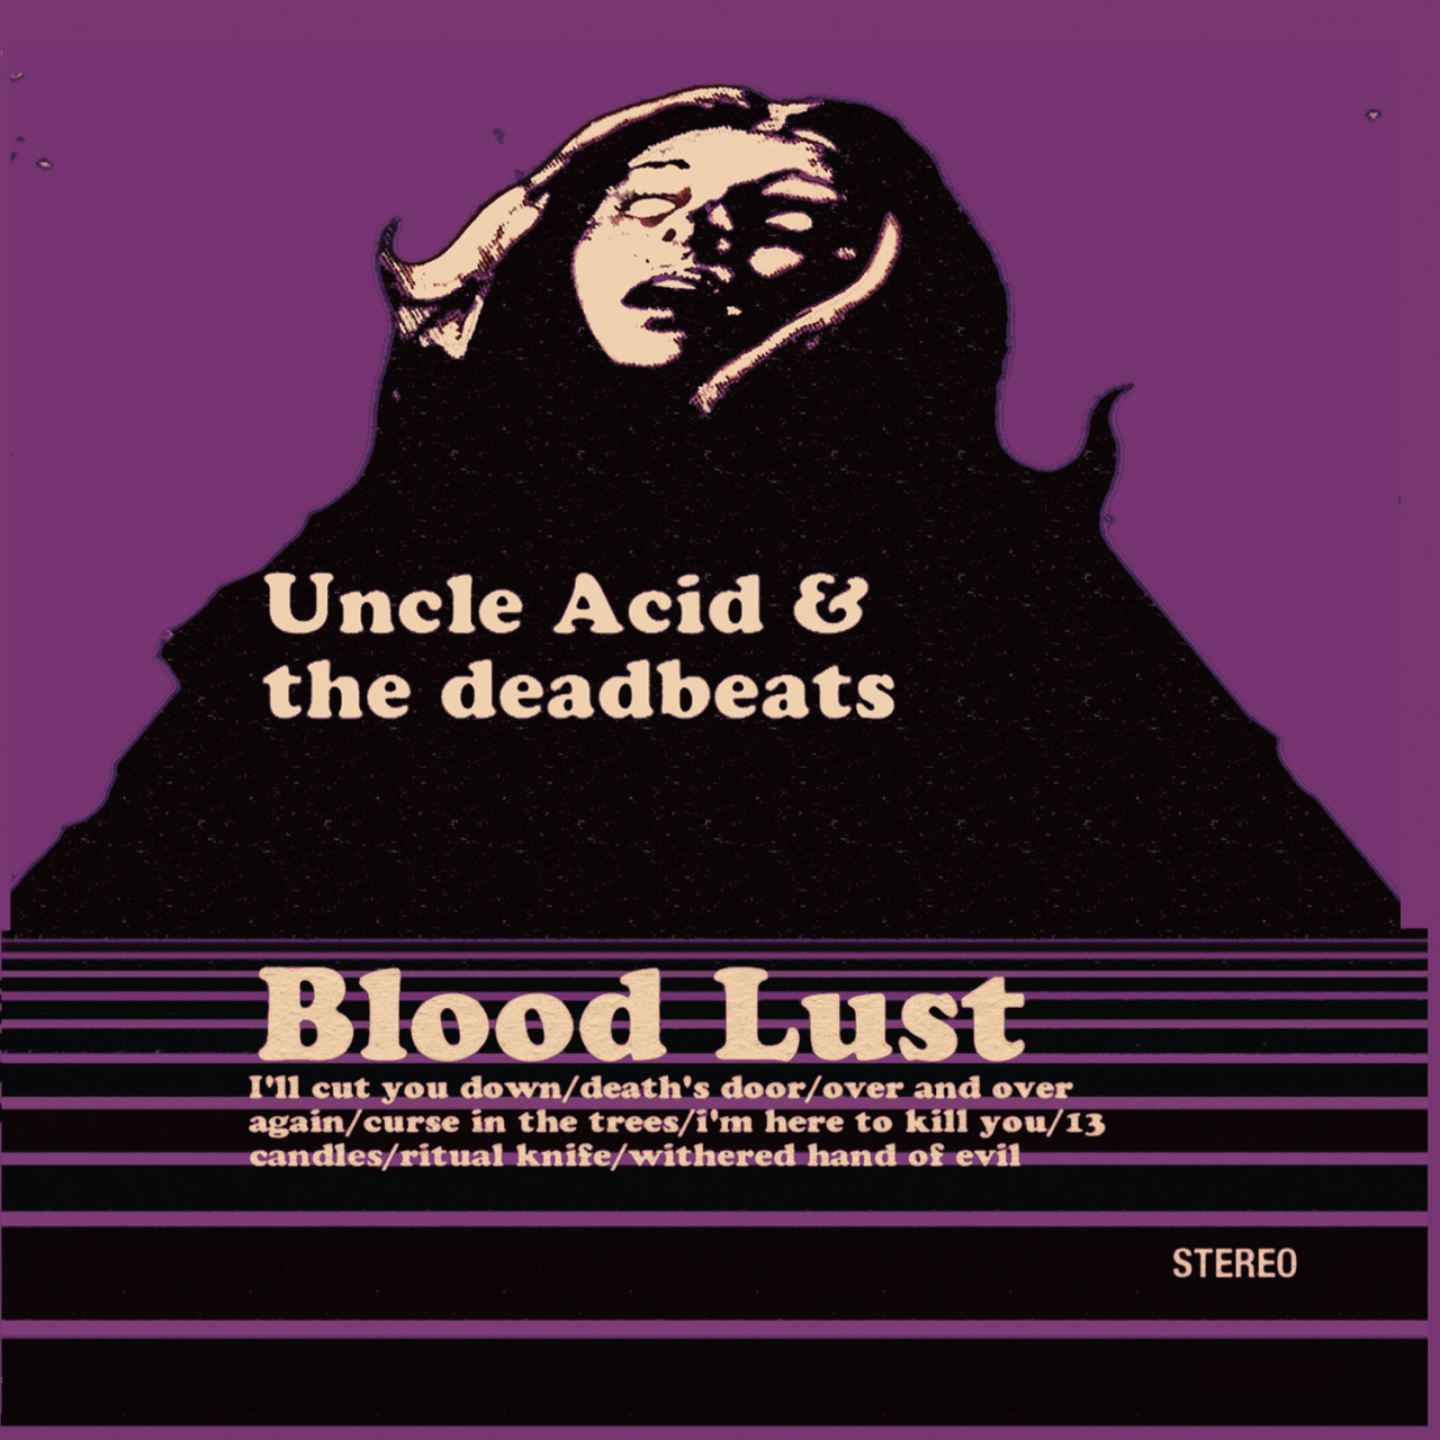 UNCLE ACID AND THE DEADBEATS - Blood Lust LP (Purple vinyl)